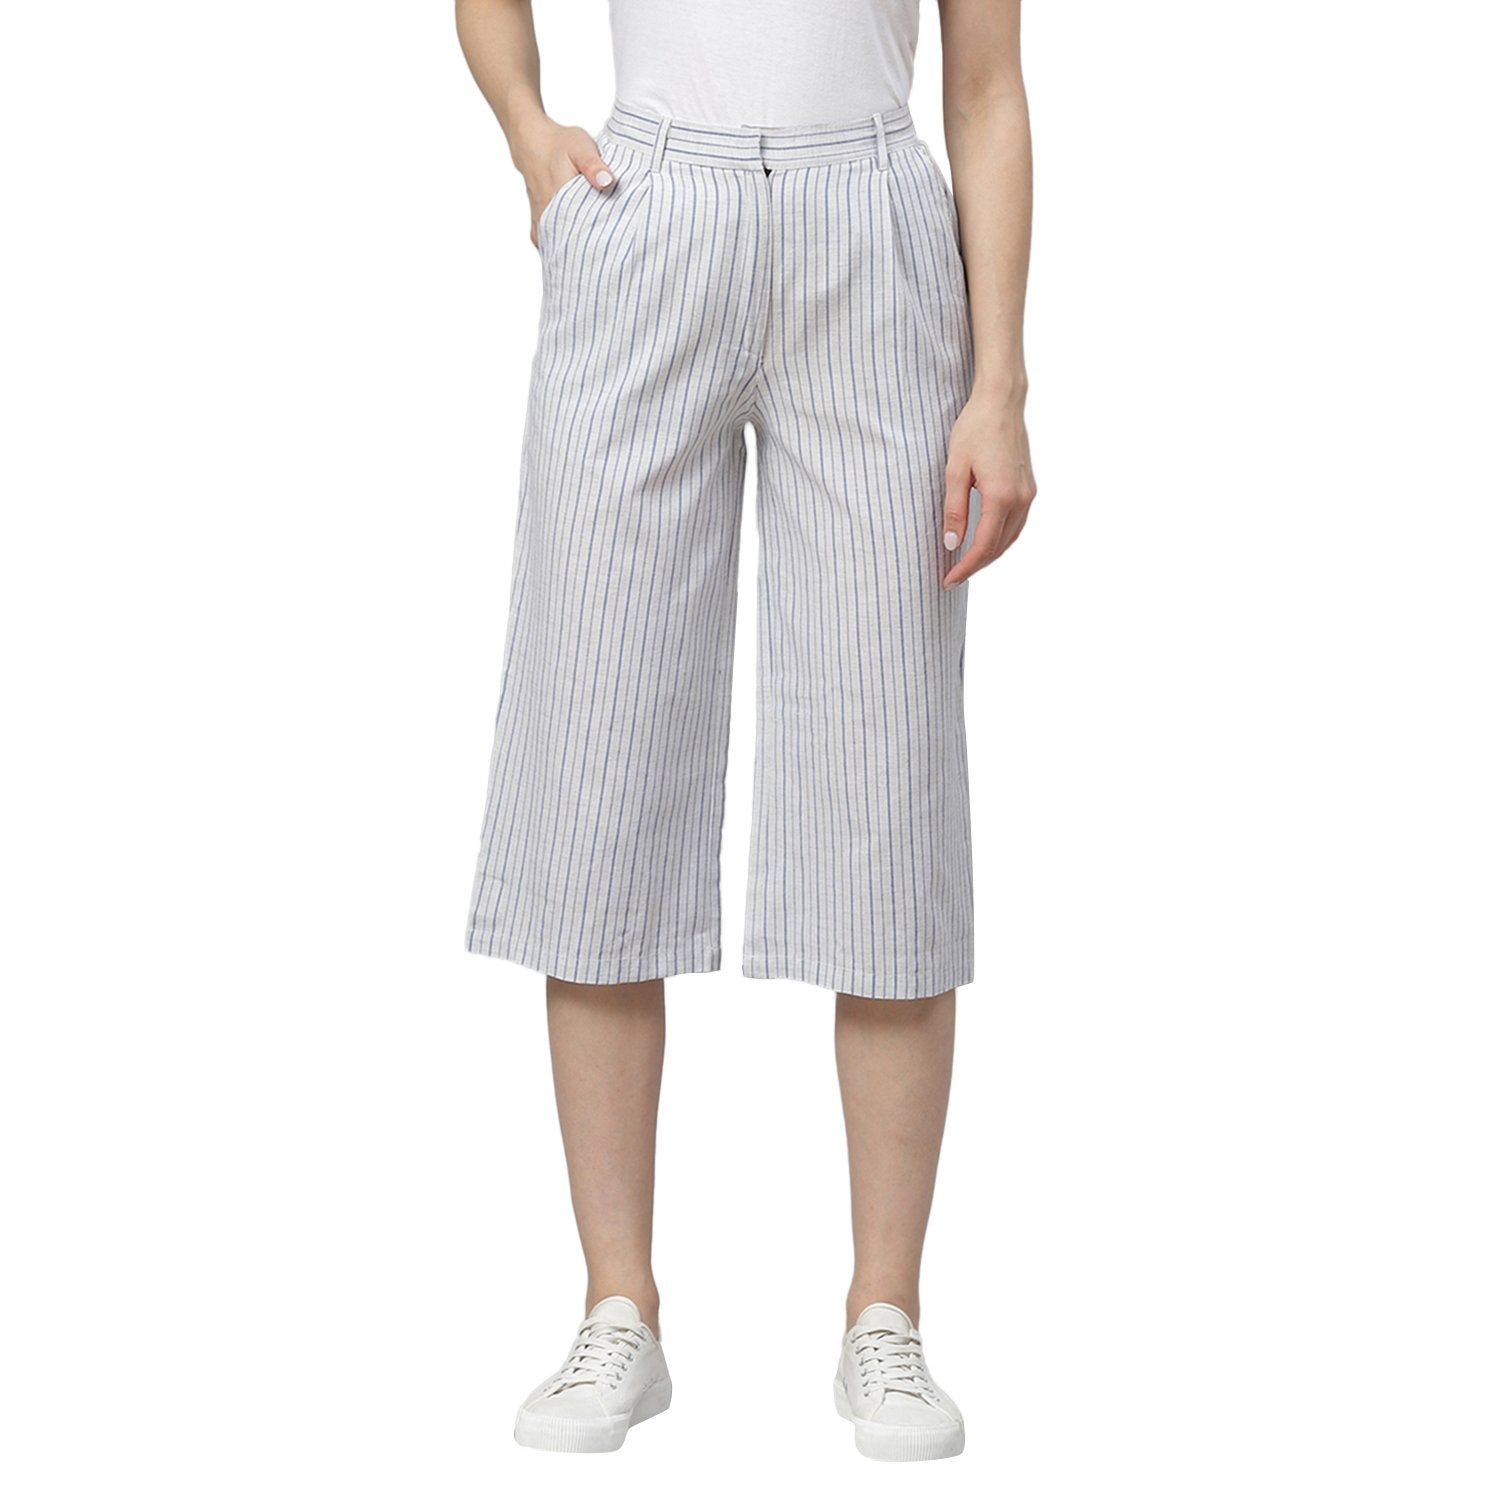 Women White Striped Cotton Culottes Trousers by Myshka (1 Pc Set)